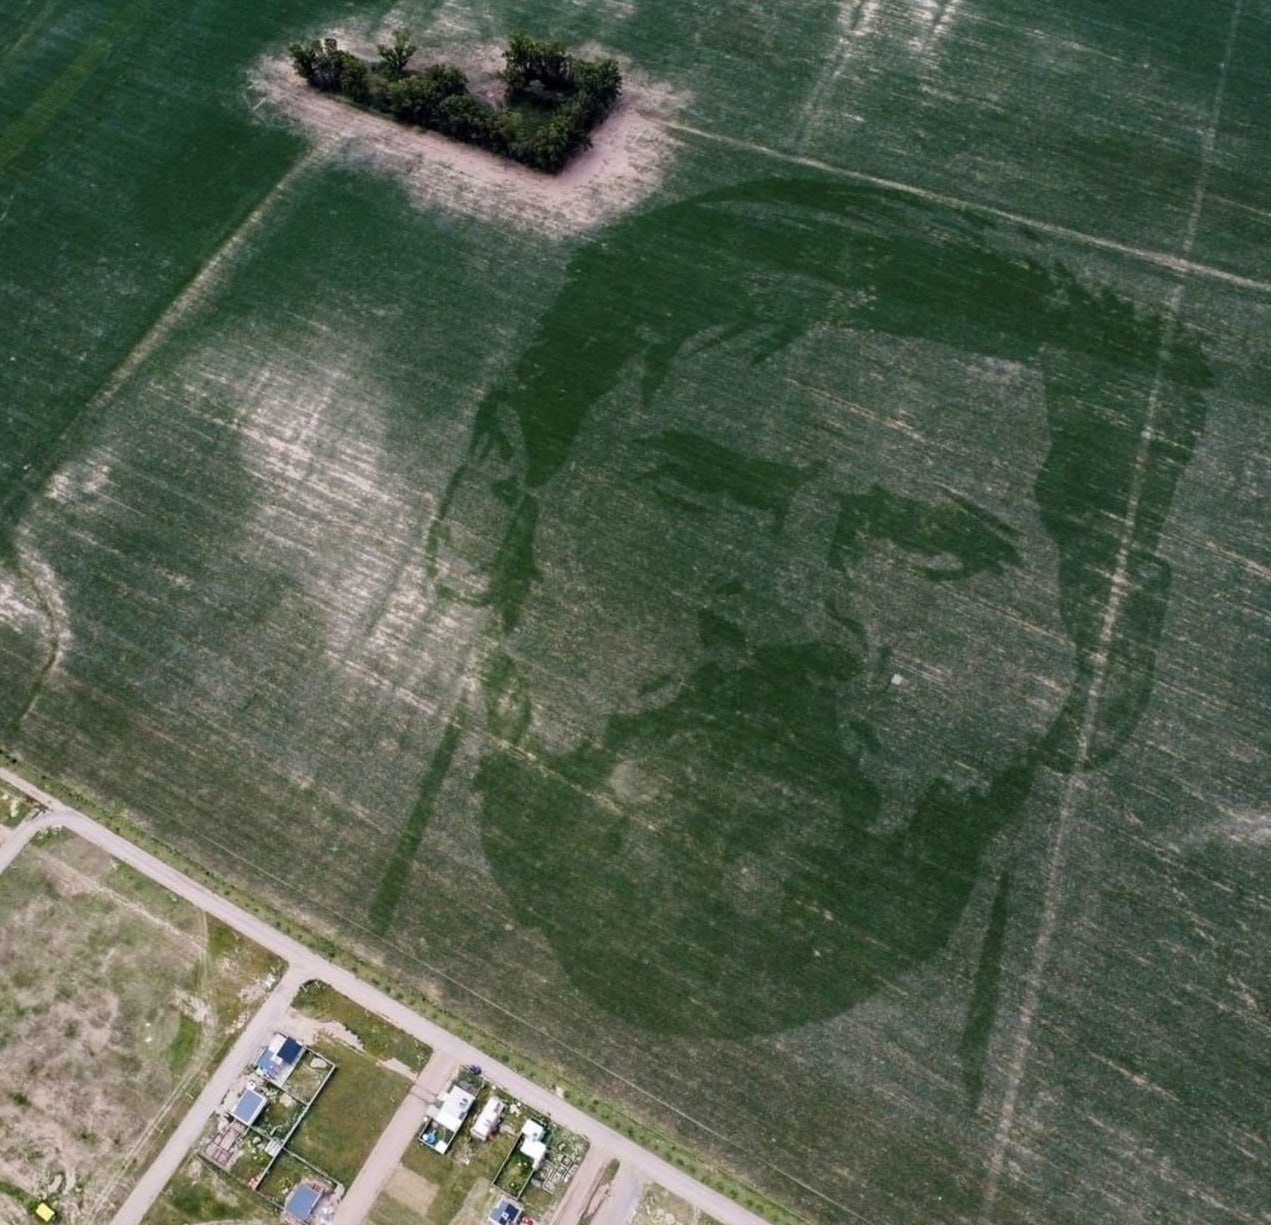 تصویری از چهره مسی روی زمین کشاورزی!